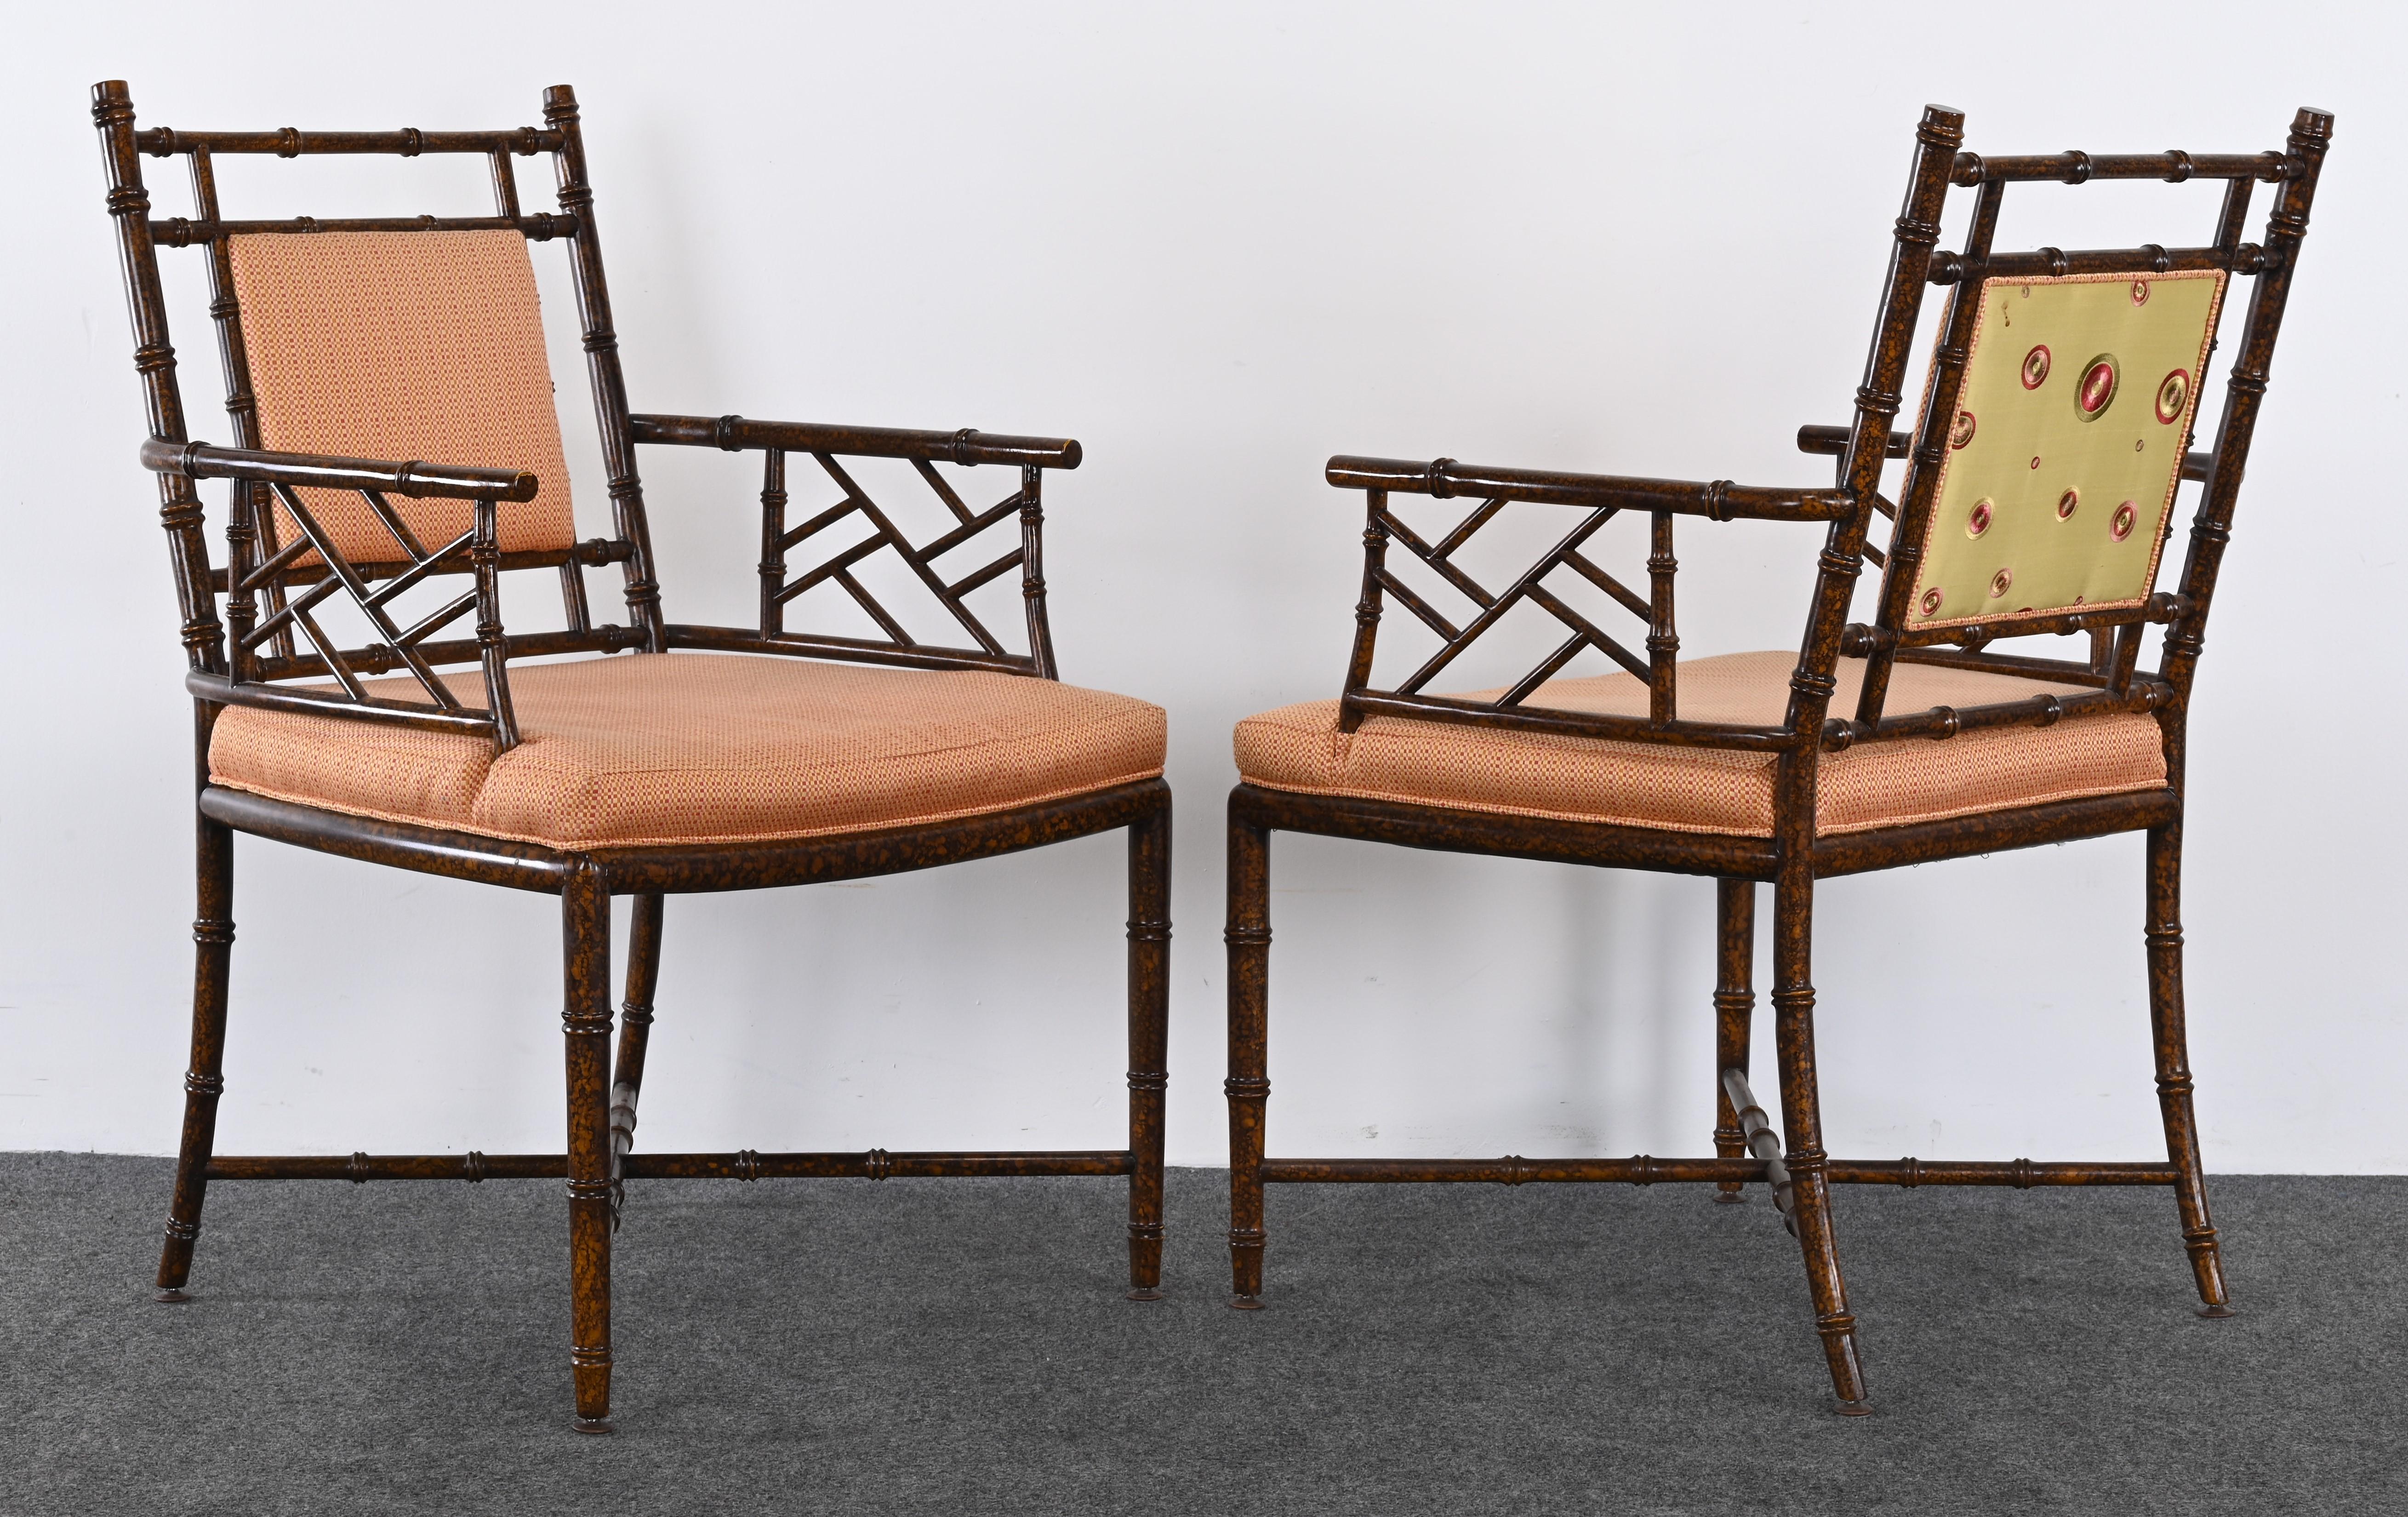 Une paire de fauteuils en faux bambou de style Regency ou Chippendale chinois par Pearson étiqueté 2018. Le cadre est en bois d'érable. Les fauteuils décoratifs sont structurellement sains et présentent une usure mineure des finitions, comme le